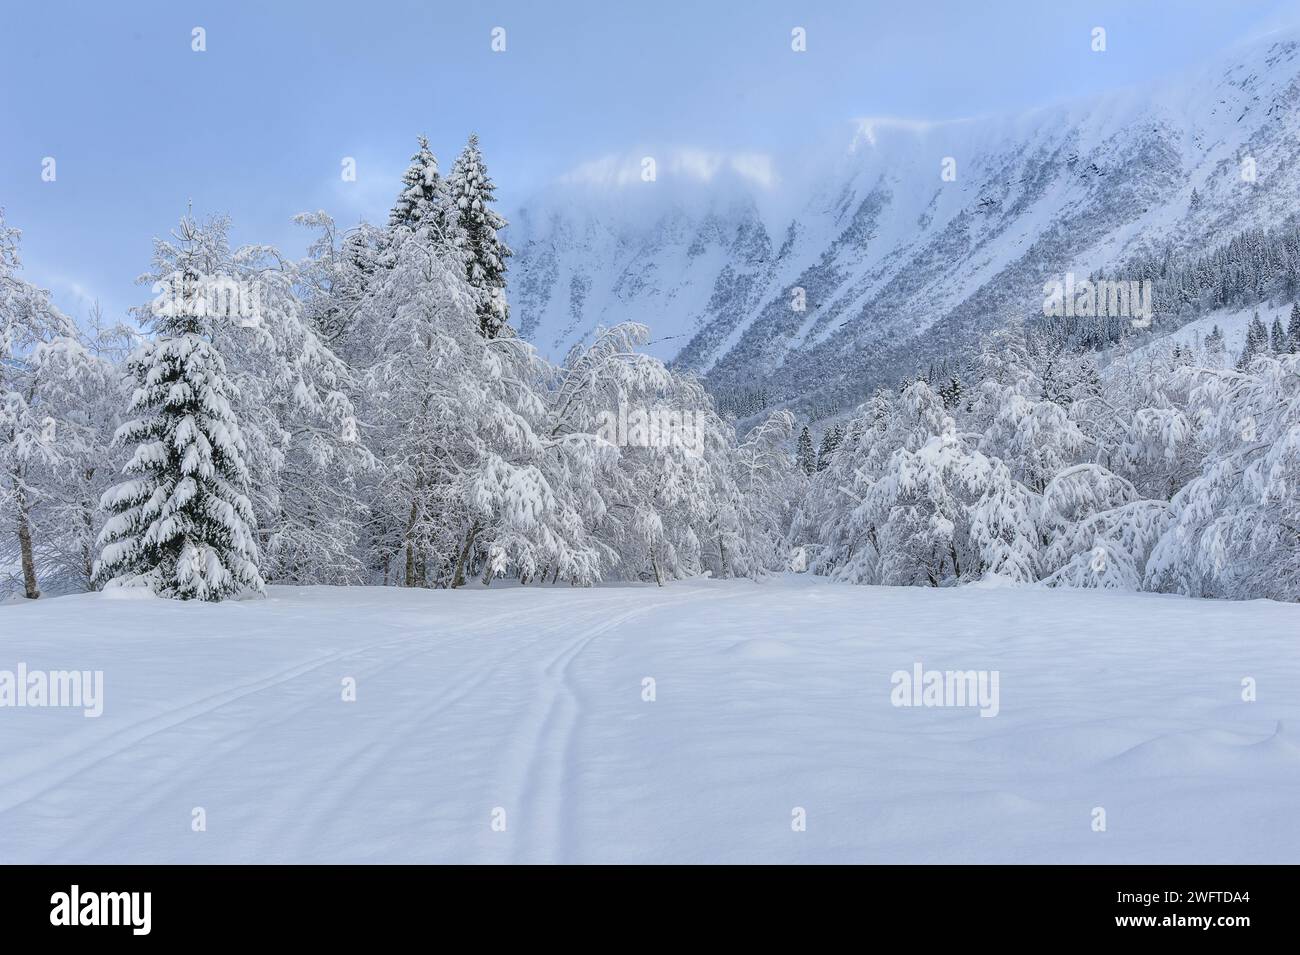 Eine ruhige Landschaft zeigt eine frische Schneedecke, die die Bäume und Berge umhüllt und eine ruhige und malerische Winterszene schafft. Stockfoto